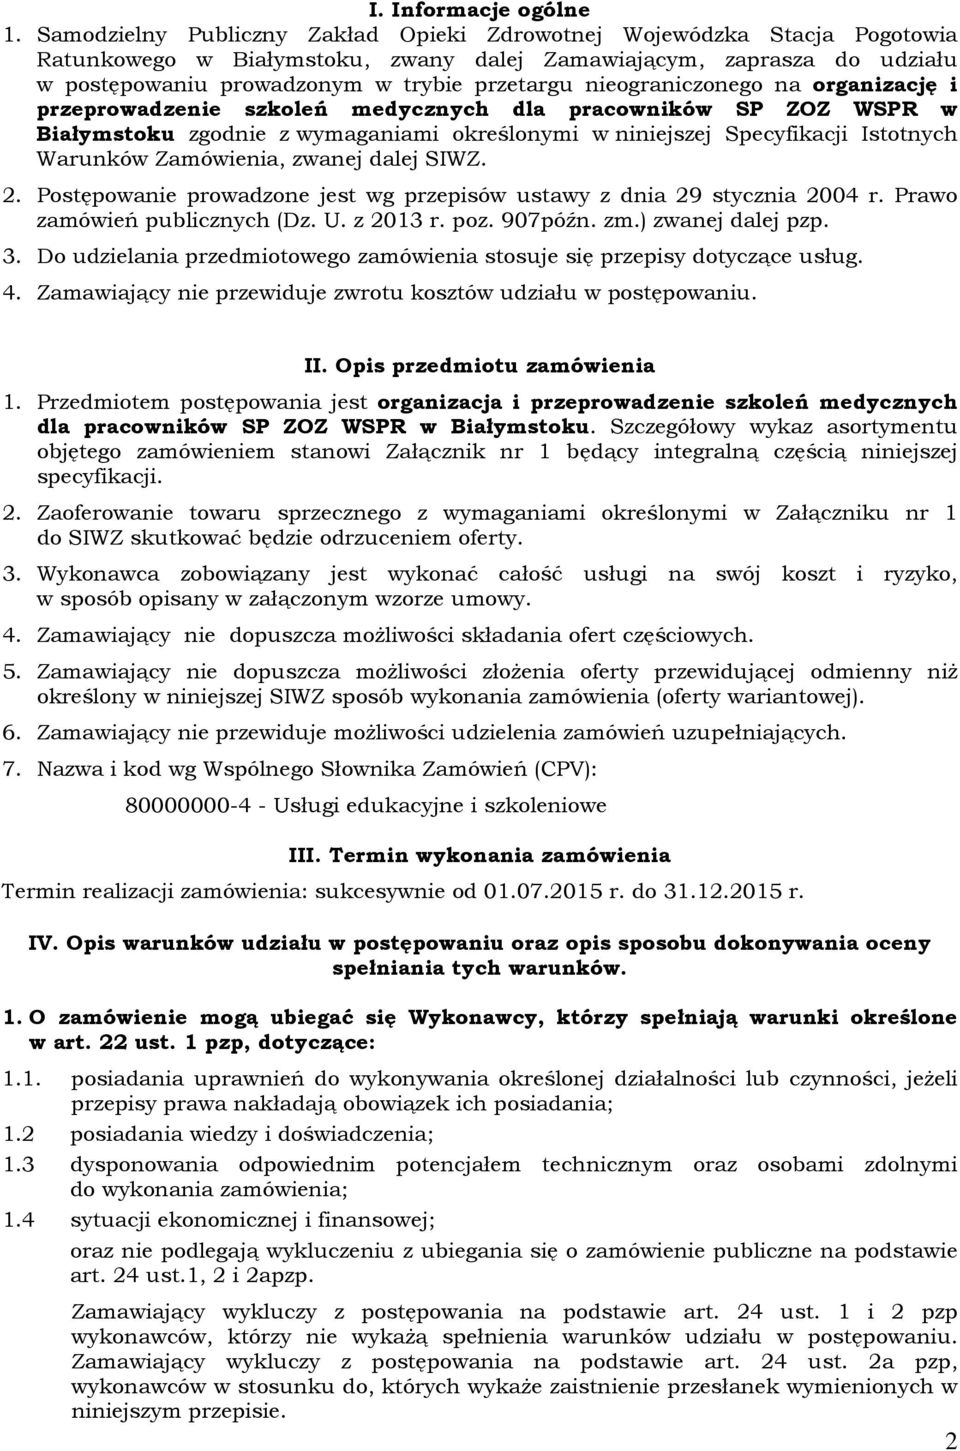 nieograniczonego na organizację i przeprowadzenie szkoleń medycznych dla pracowników SP ZOZ WSPR w Białymstoku zgodnie z wymaganiami określonymi w niniejszej Specyfikacji Istotnych Warunków